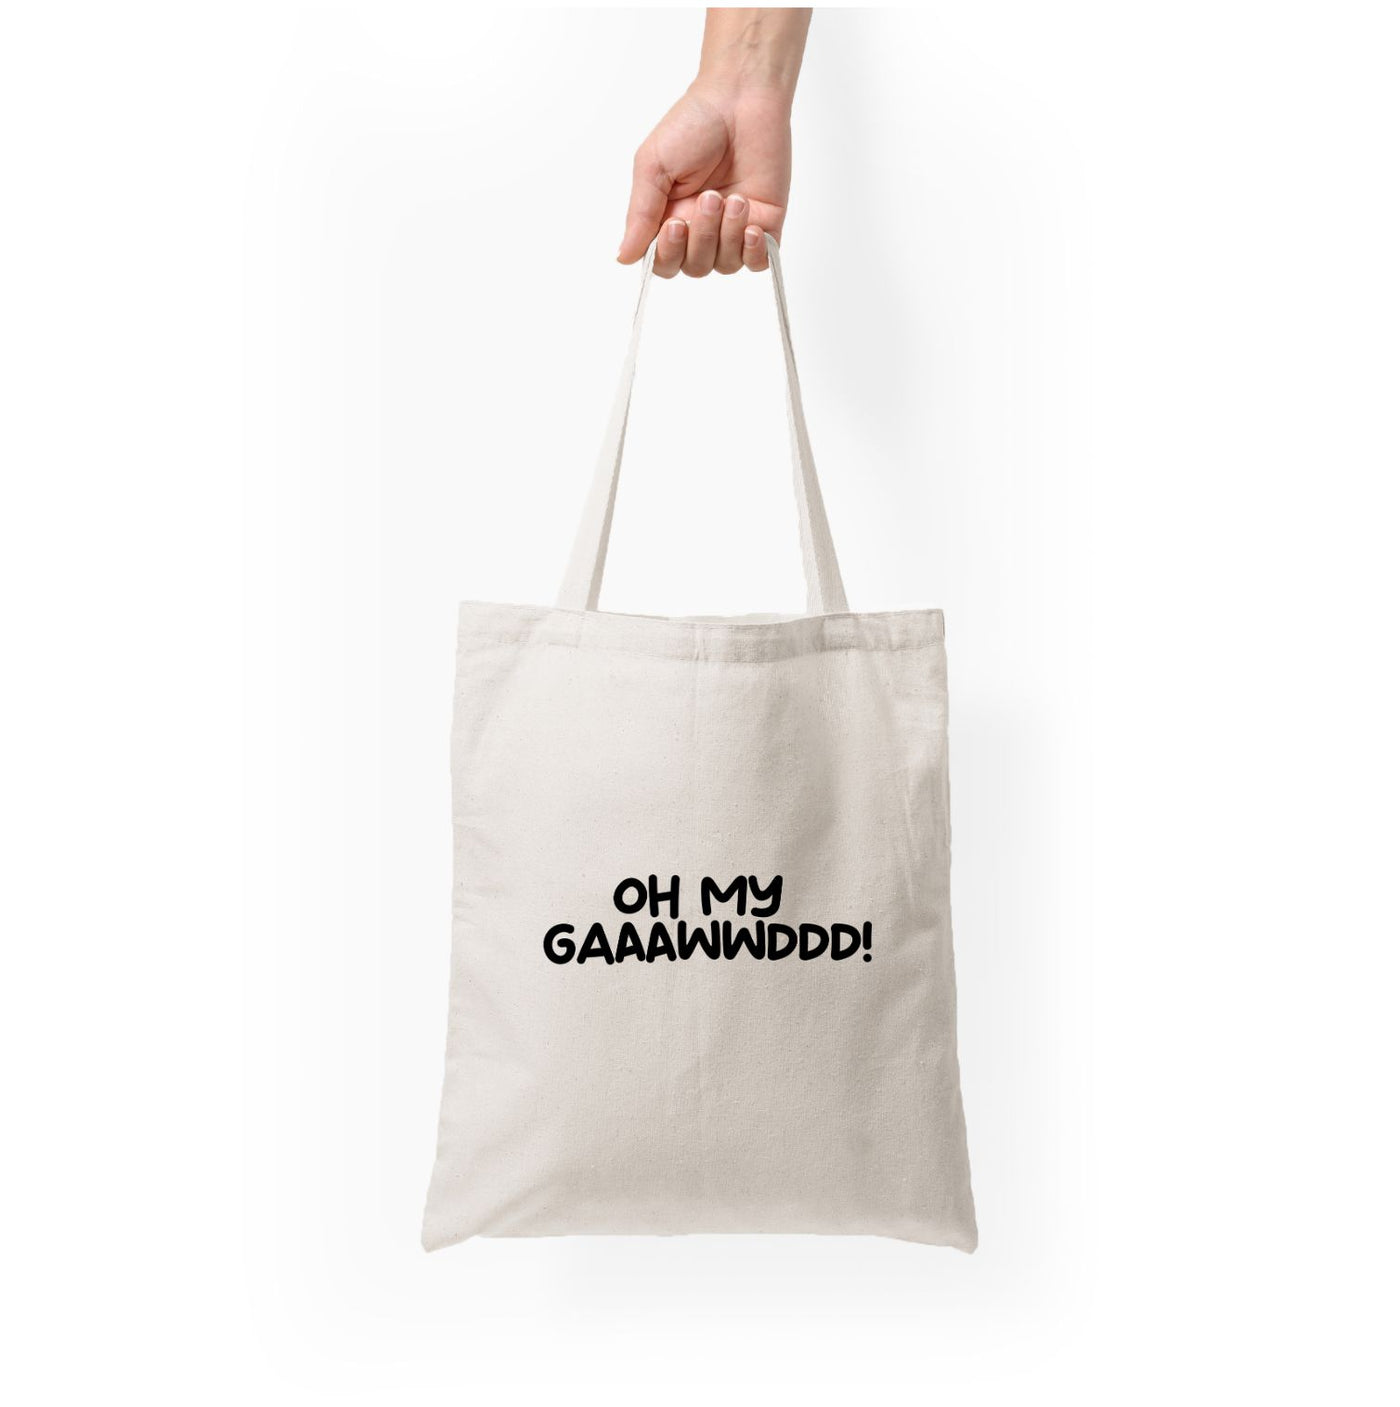 Oh My Gaaawwddd! - Islanders Tote Bag